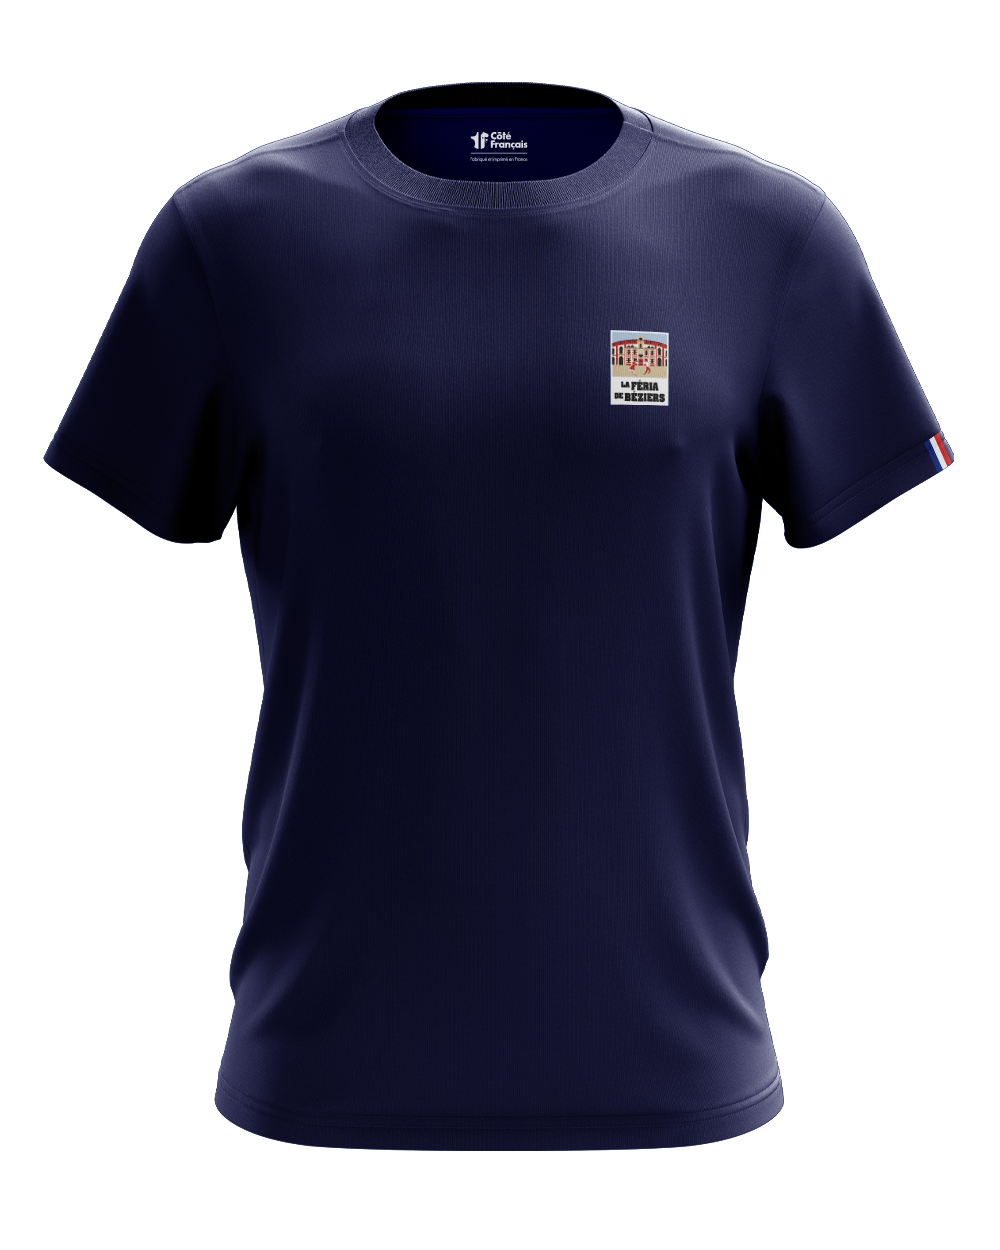 T-shirt "Béziers Féria" - bleu marine